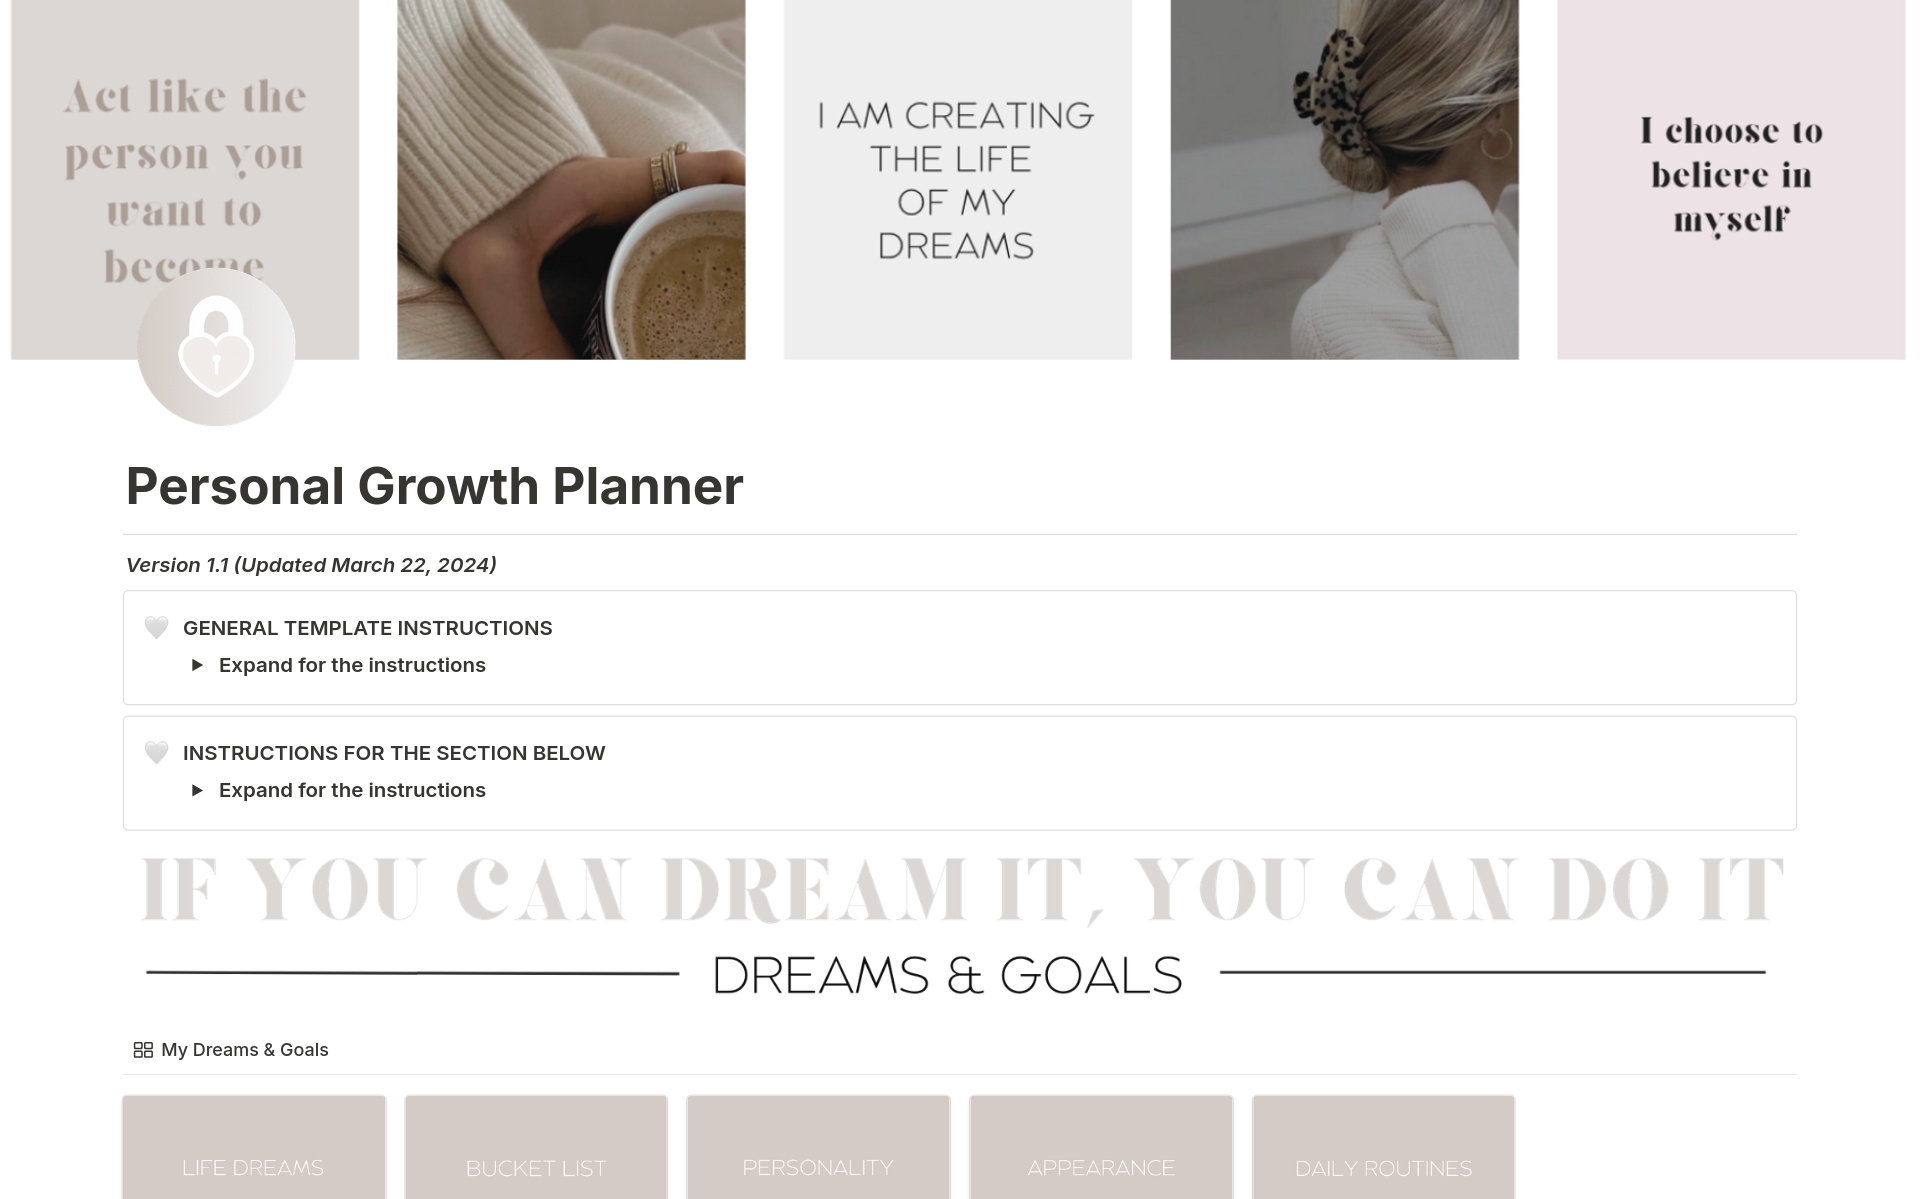 Vista previa de una plantilla para Personal Growth Planner